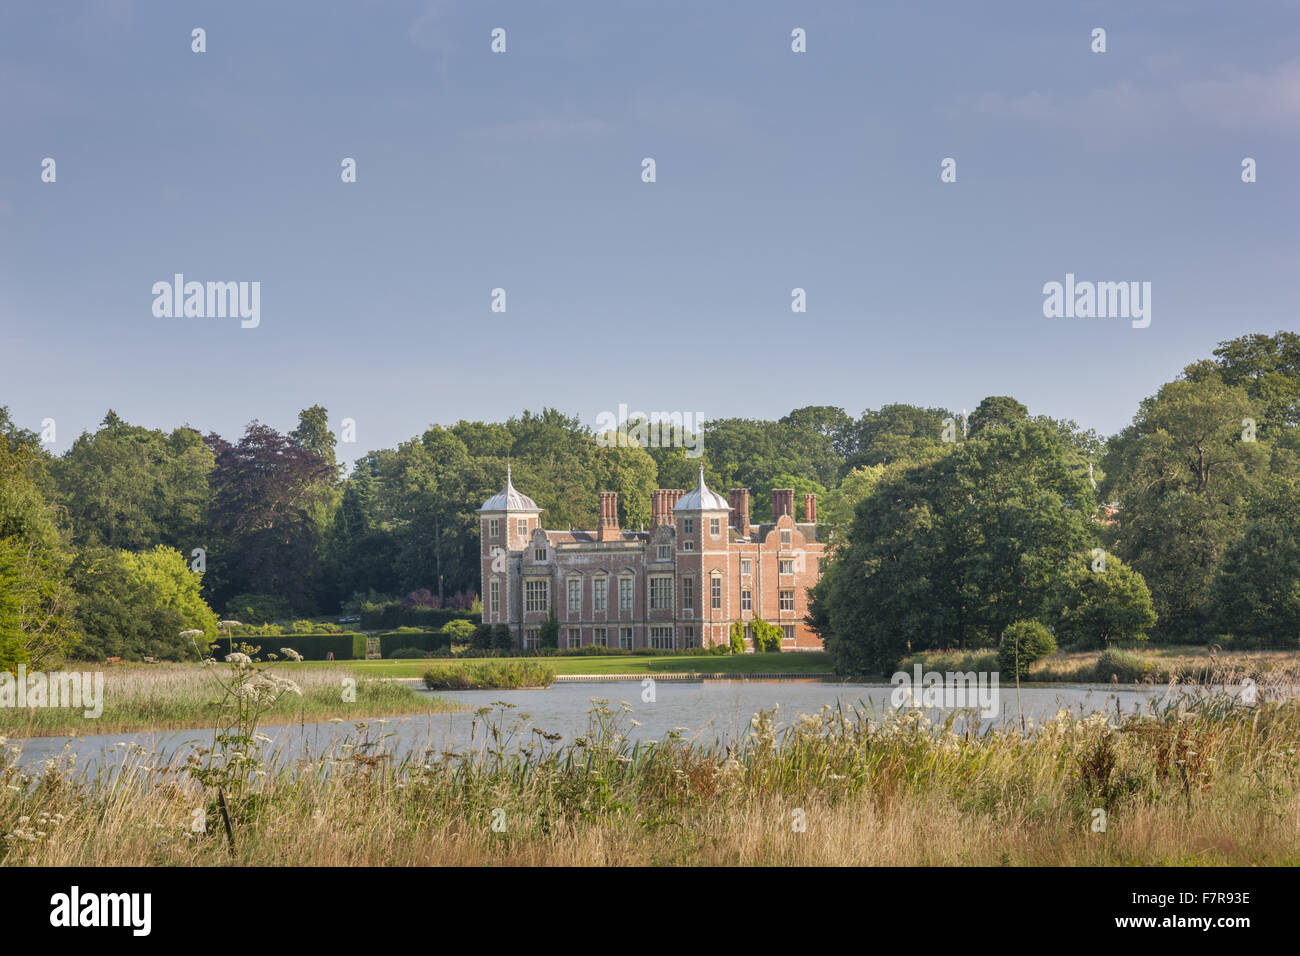 Die Halle des Seewassers Blickling Estate, Norfolk. Blickling ist ein Turm aus rotem Backstein jakobinischen Herrenhaus, sitzen in wunderschönen Gärten und Parks. Stockfoto